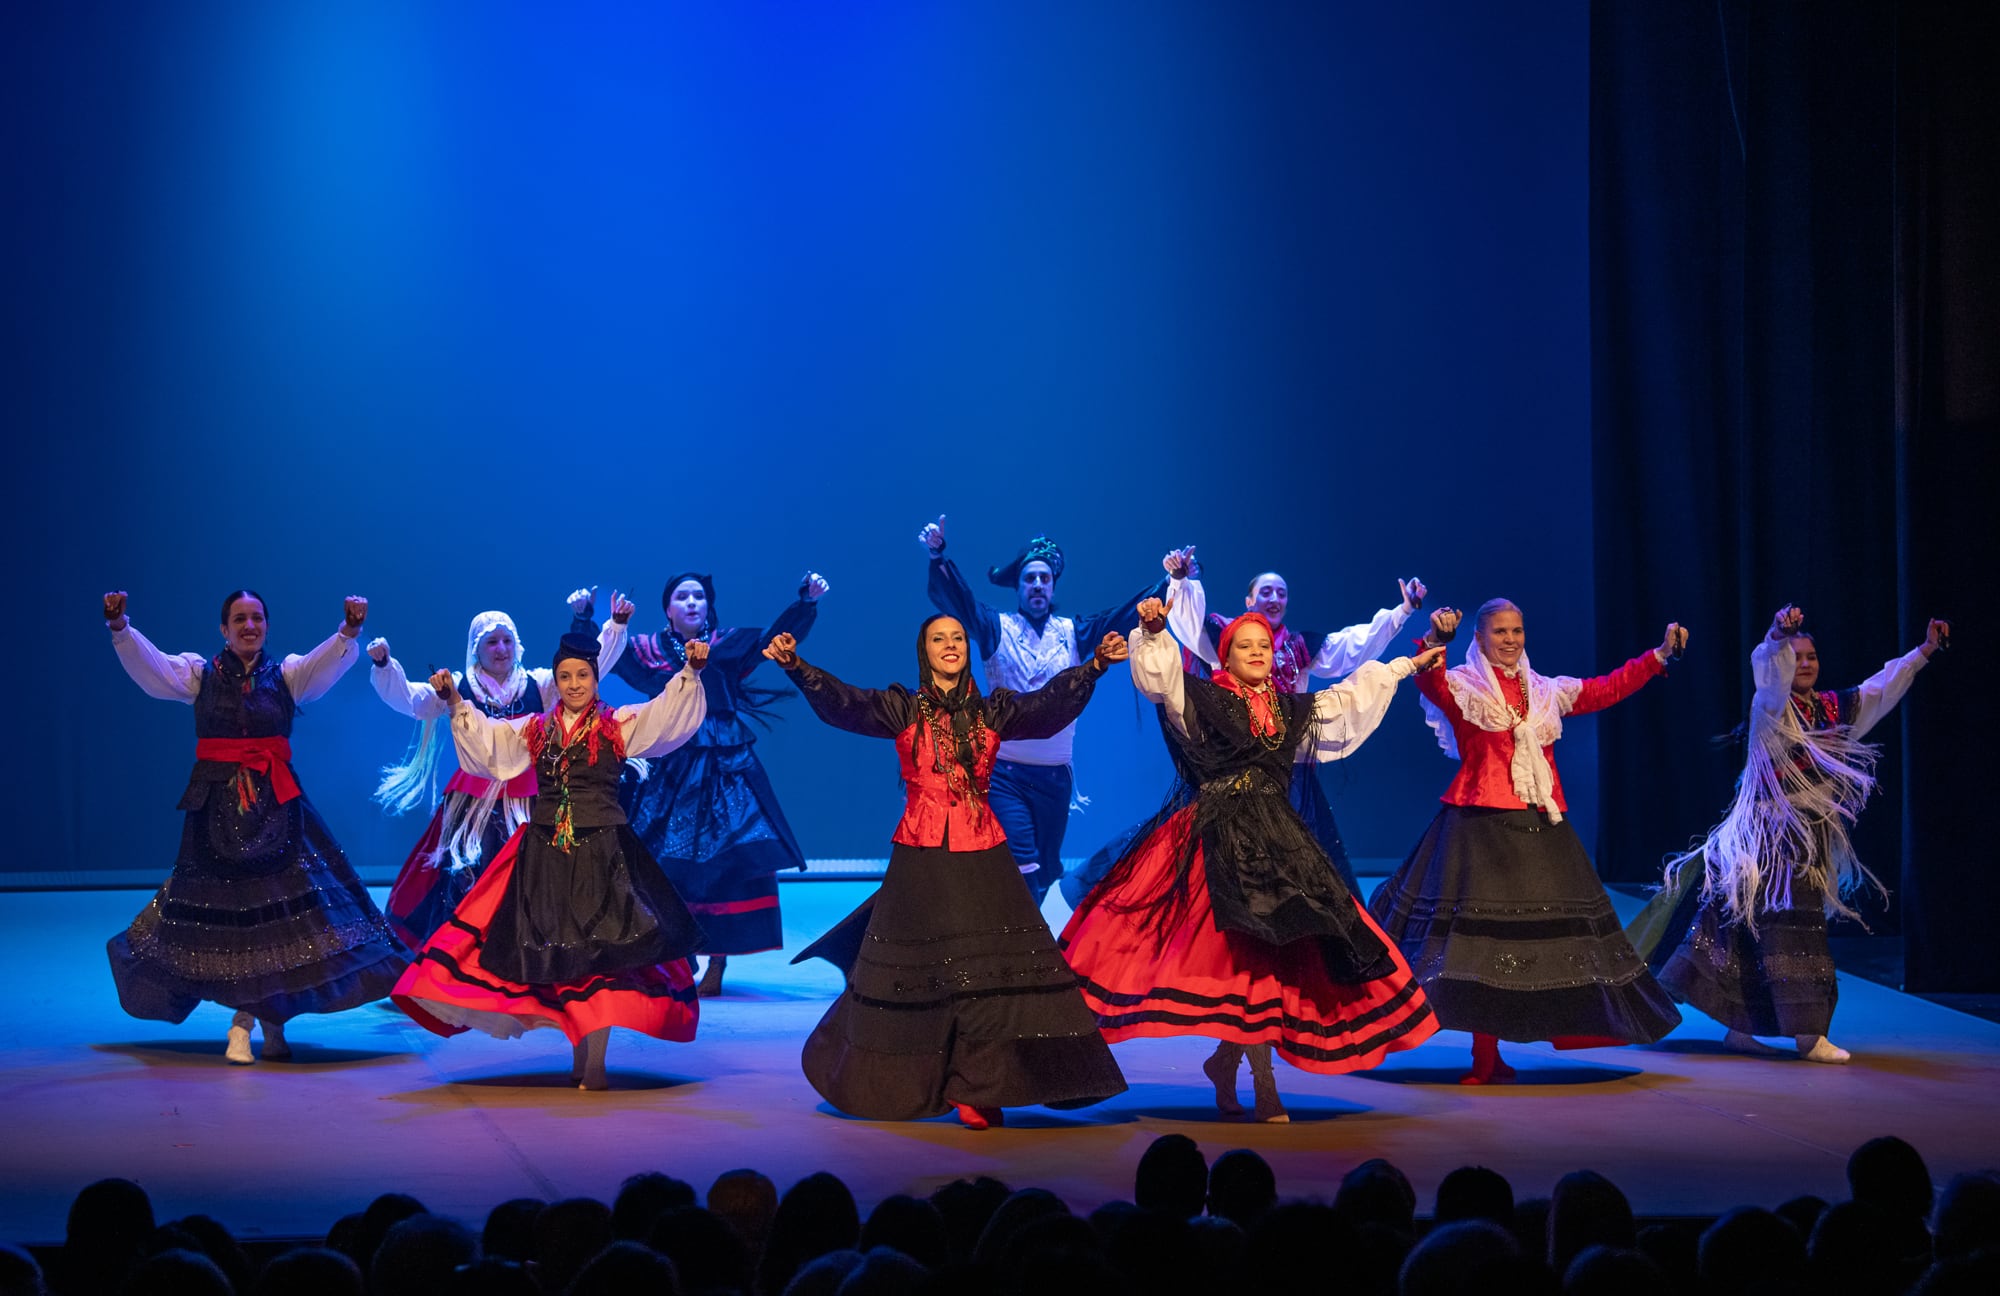 La Sociedad Parroquial Vedra participó de la función con un puñado de danzas típicas de Galicia